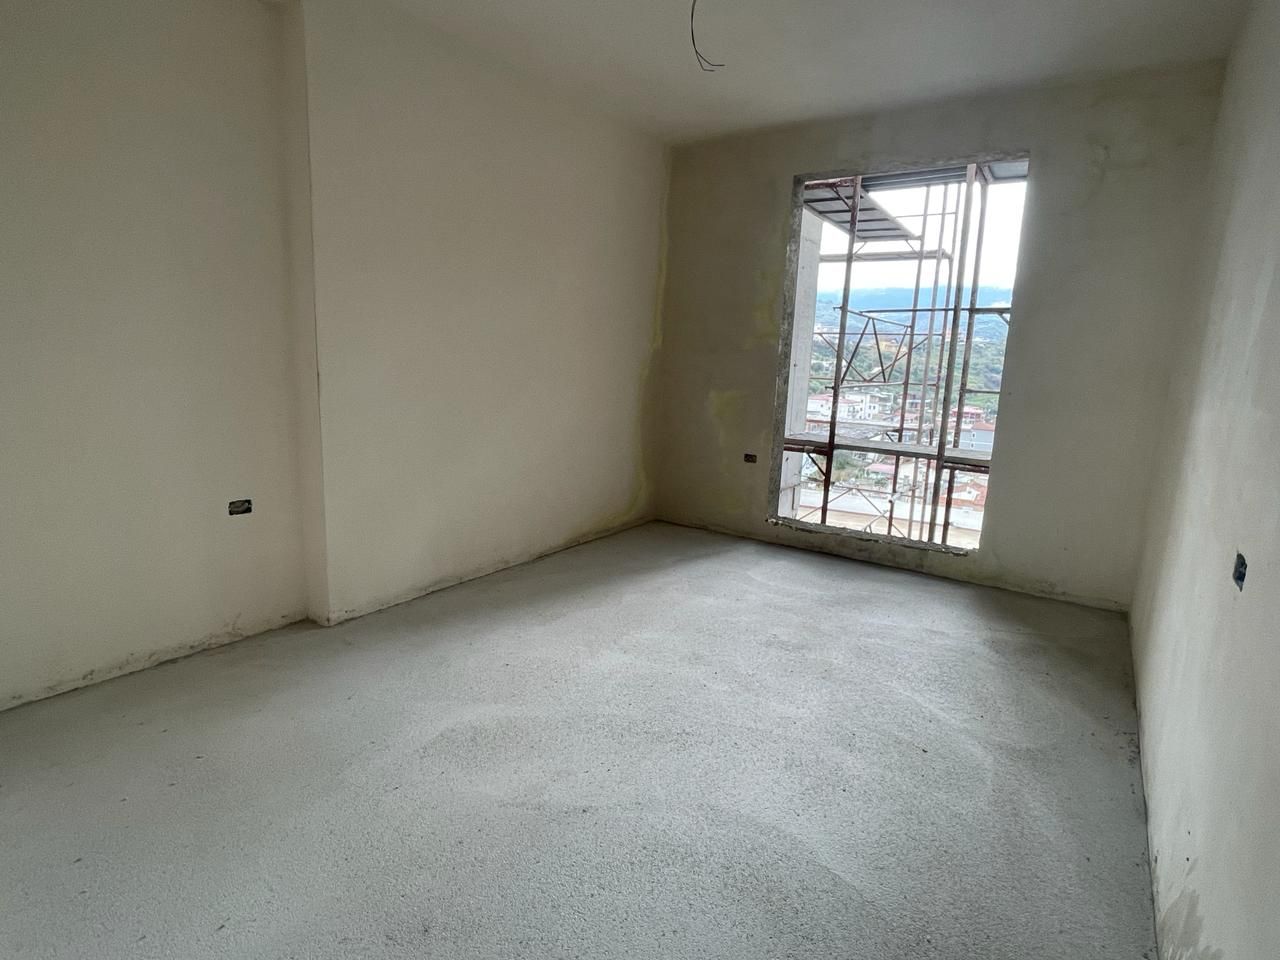 Wohnung Zum Verkauf In Vlora, In Einer Ruhigen Gegend Gelegen, In Der Nähe Des Stadtzentrums, Mit Allen Einrichtungen In Der Nähe